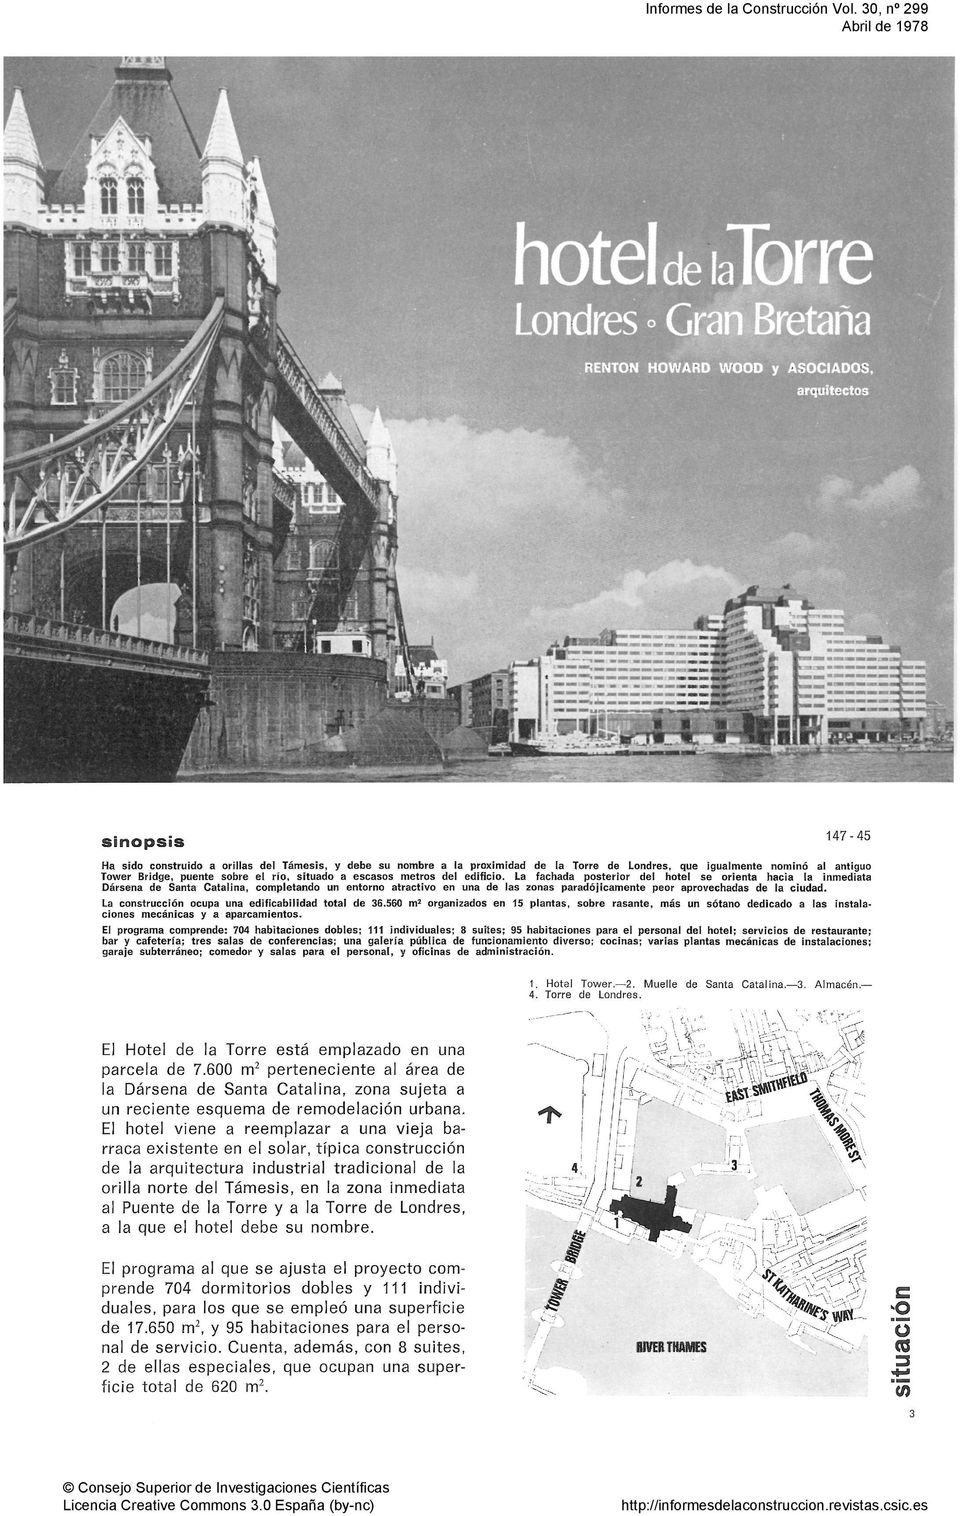 Sinopsis '^' ^^ Ha sido construido a orillas del Támesis, y debe su nombre a la proximidad de la Torre de Londres, que igualmente nominó al antiguo Tower Bridge, puente sobre el río, situado a